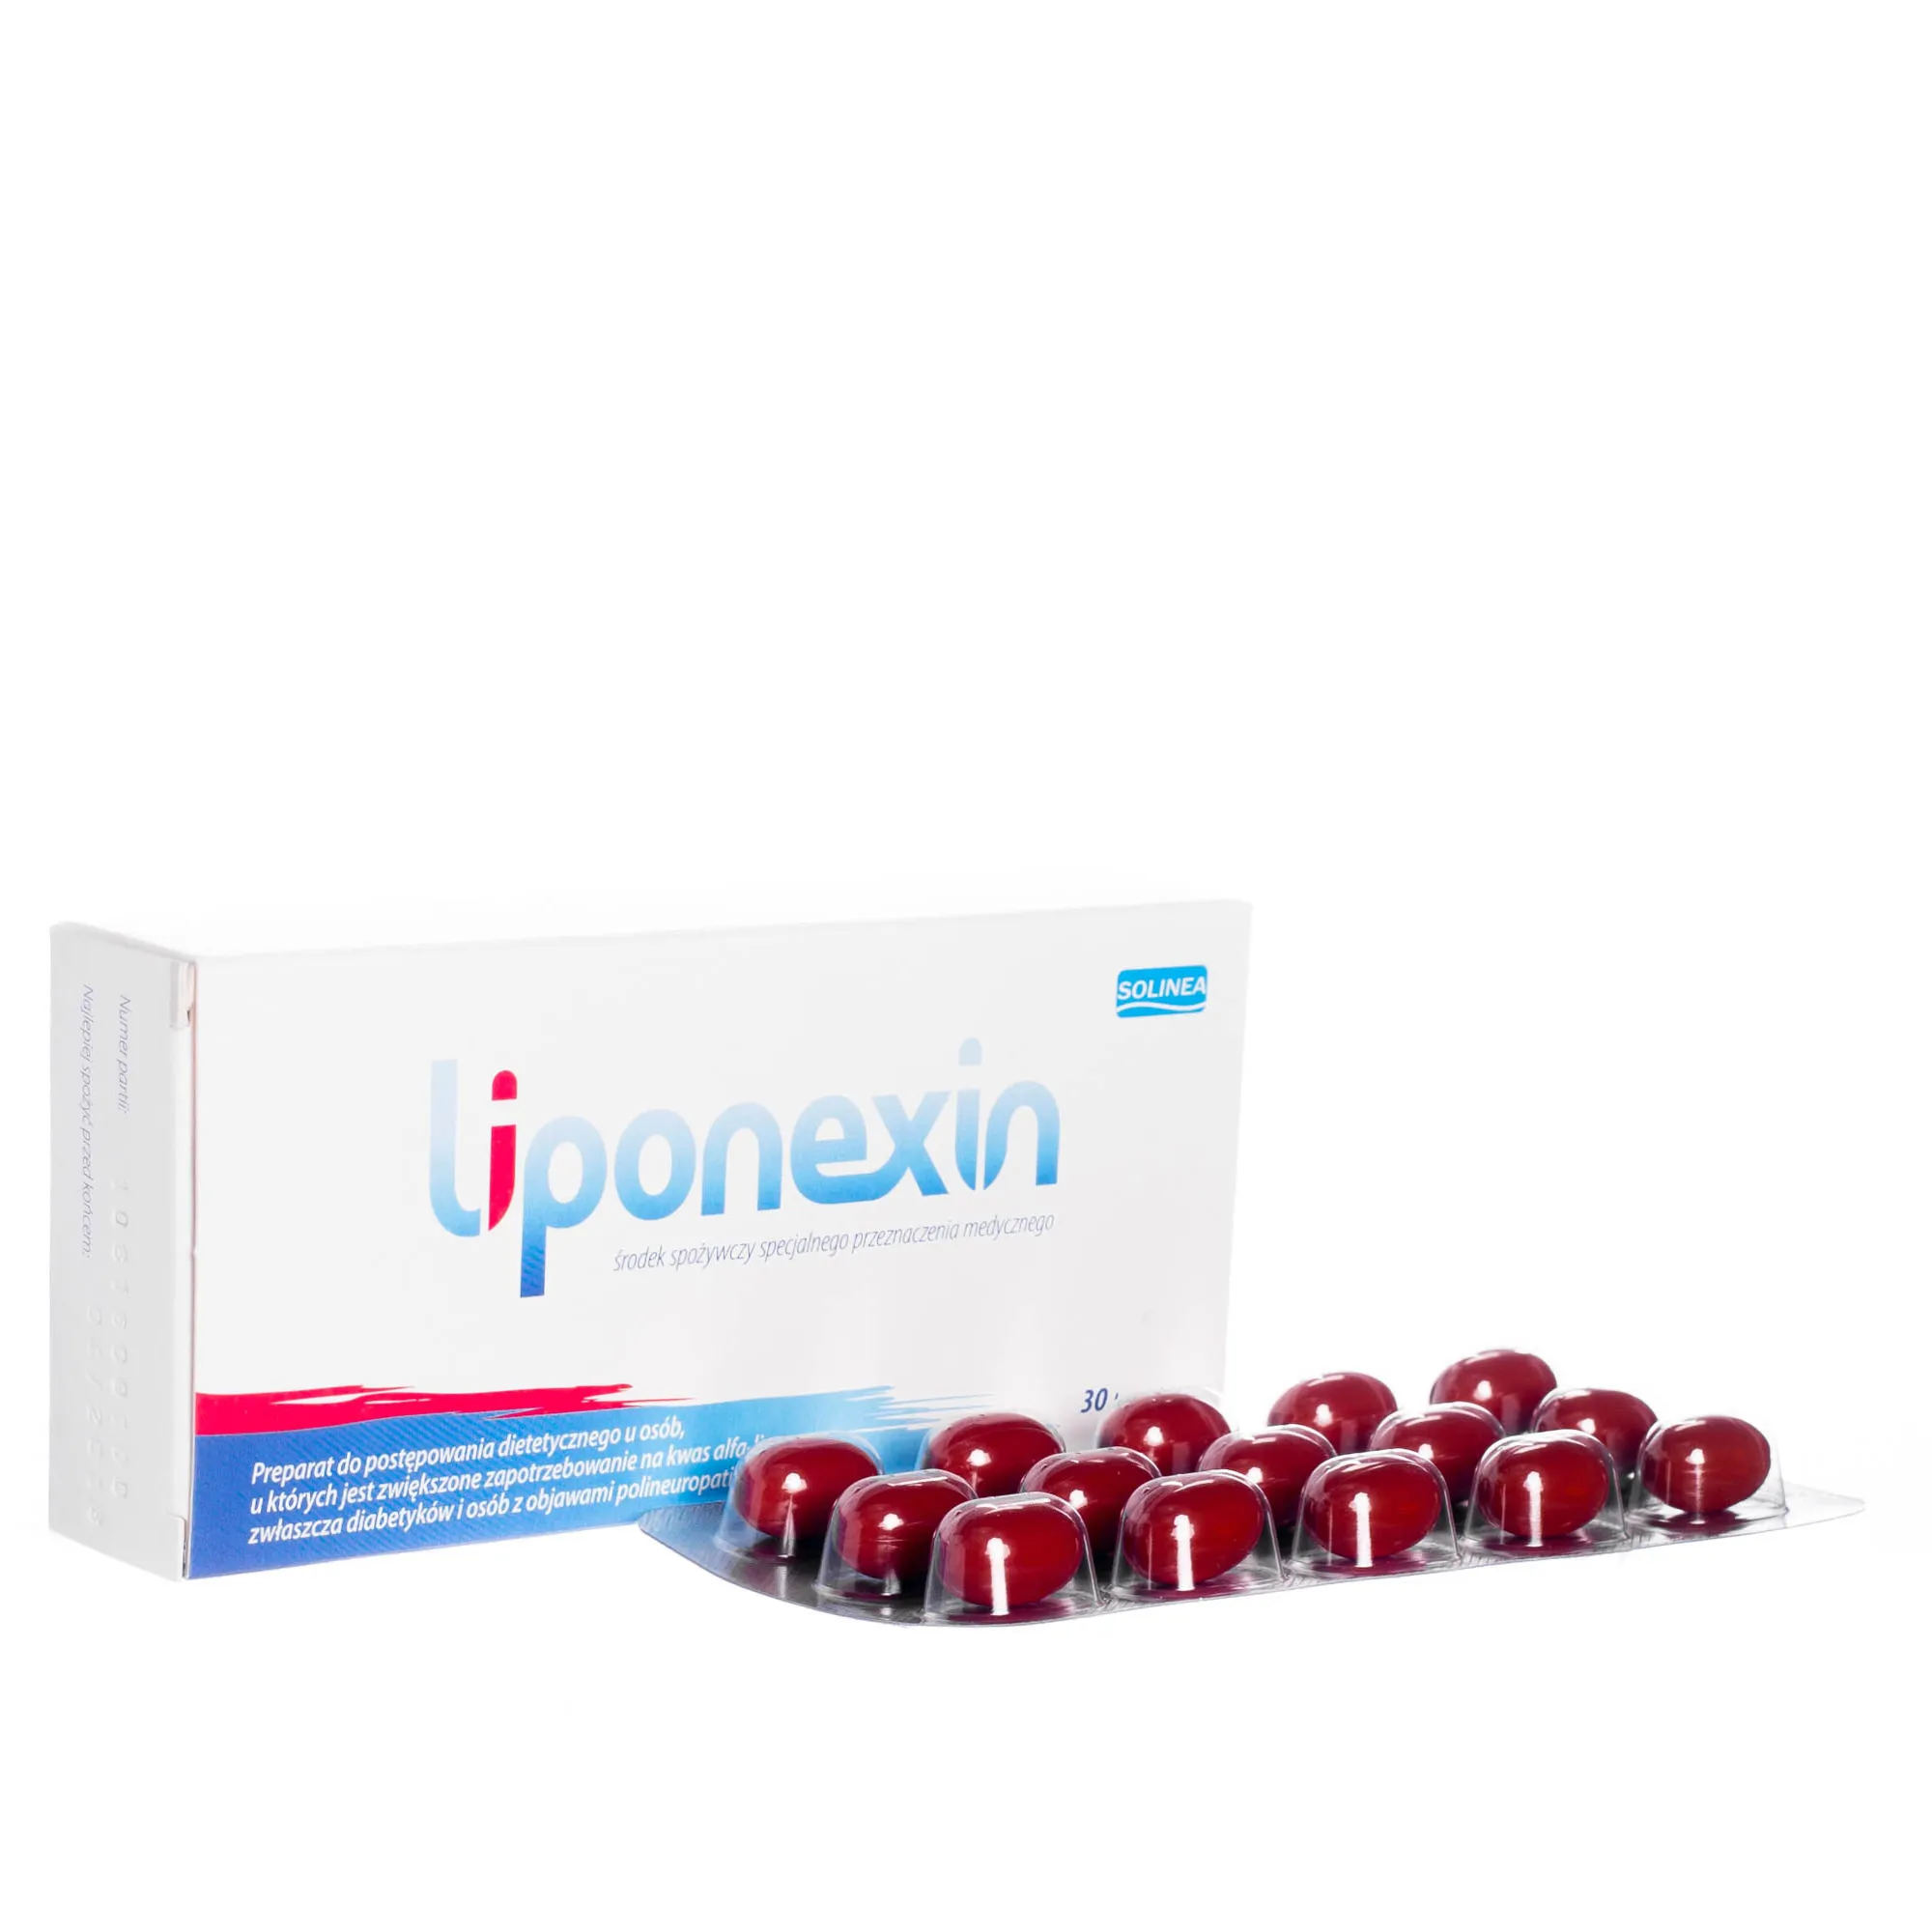 Liponexin, 30 kapsułek